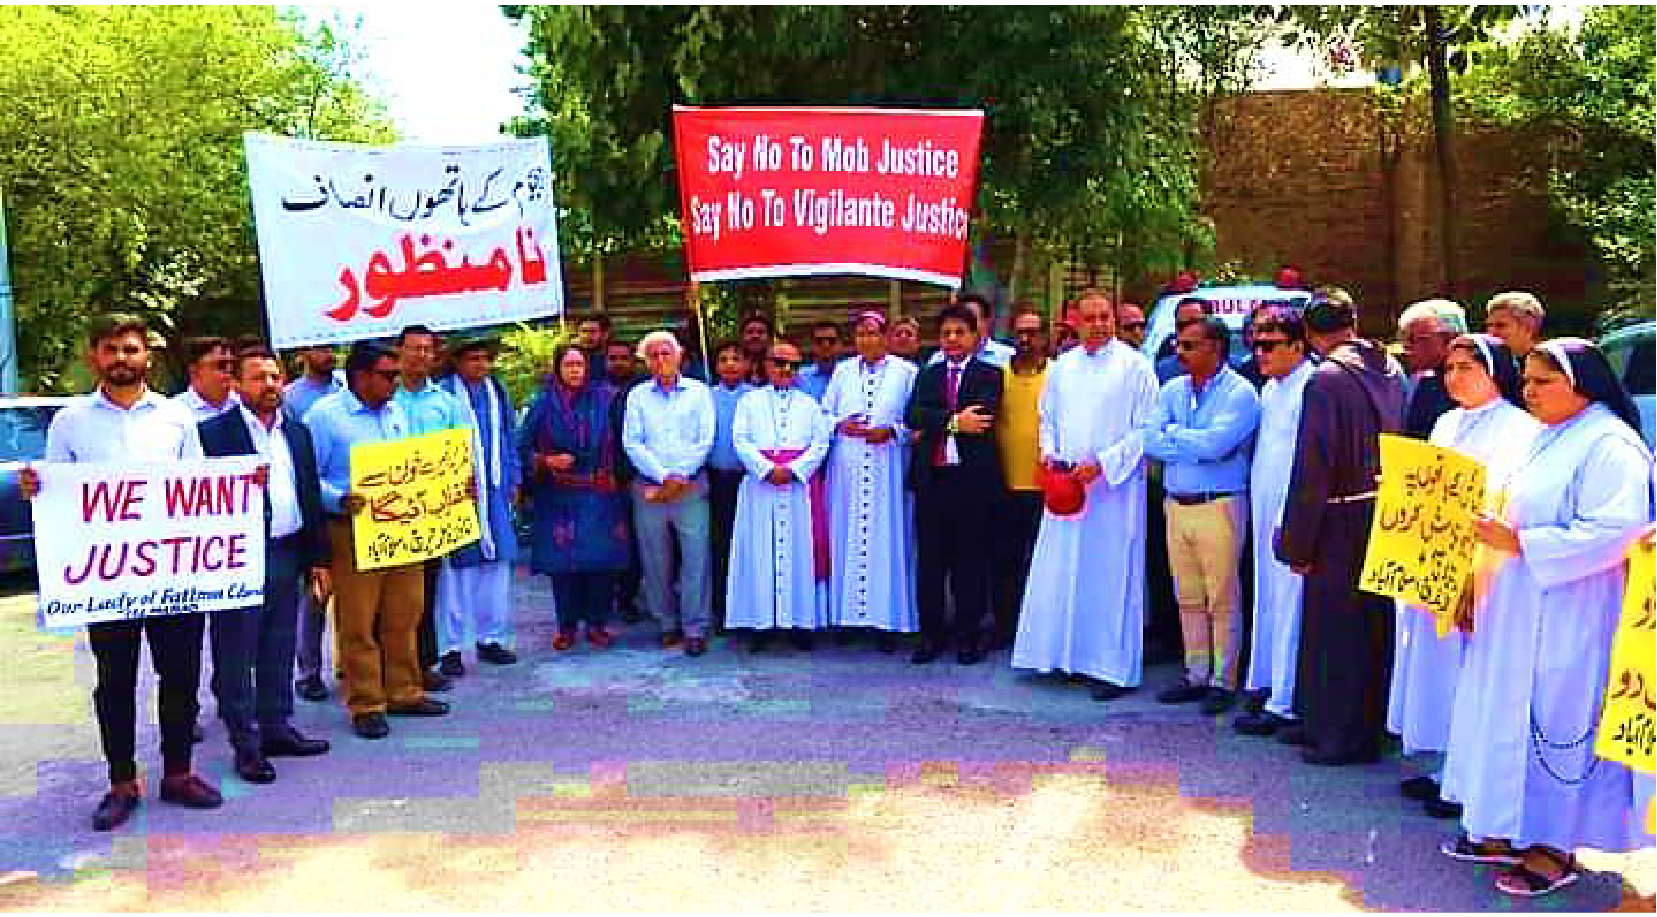 Organismo paquistaní de derechos humanos pide “justicia rápida e imparcial” tras asesinato de cristiano por turba islámica – ZENIT – Espanol